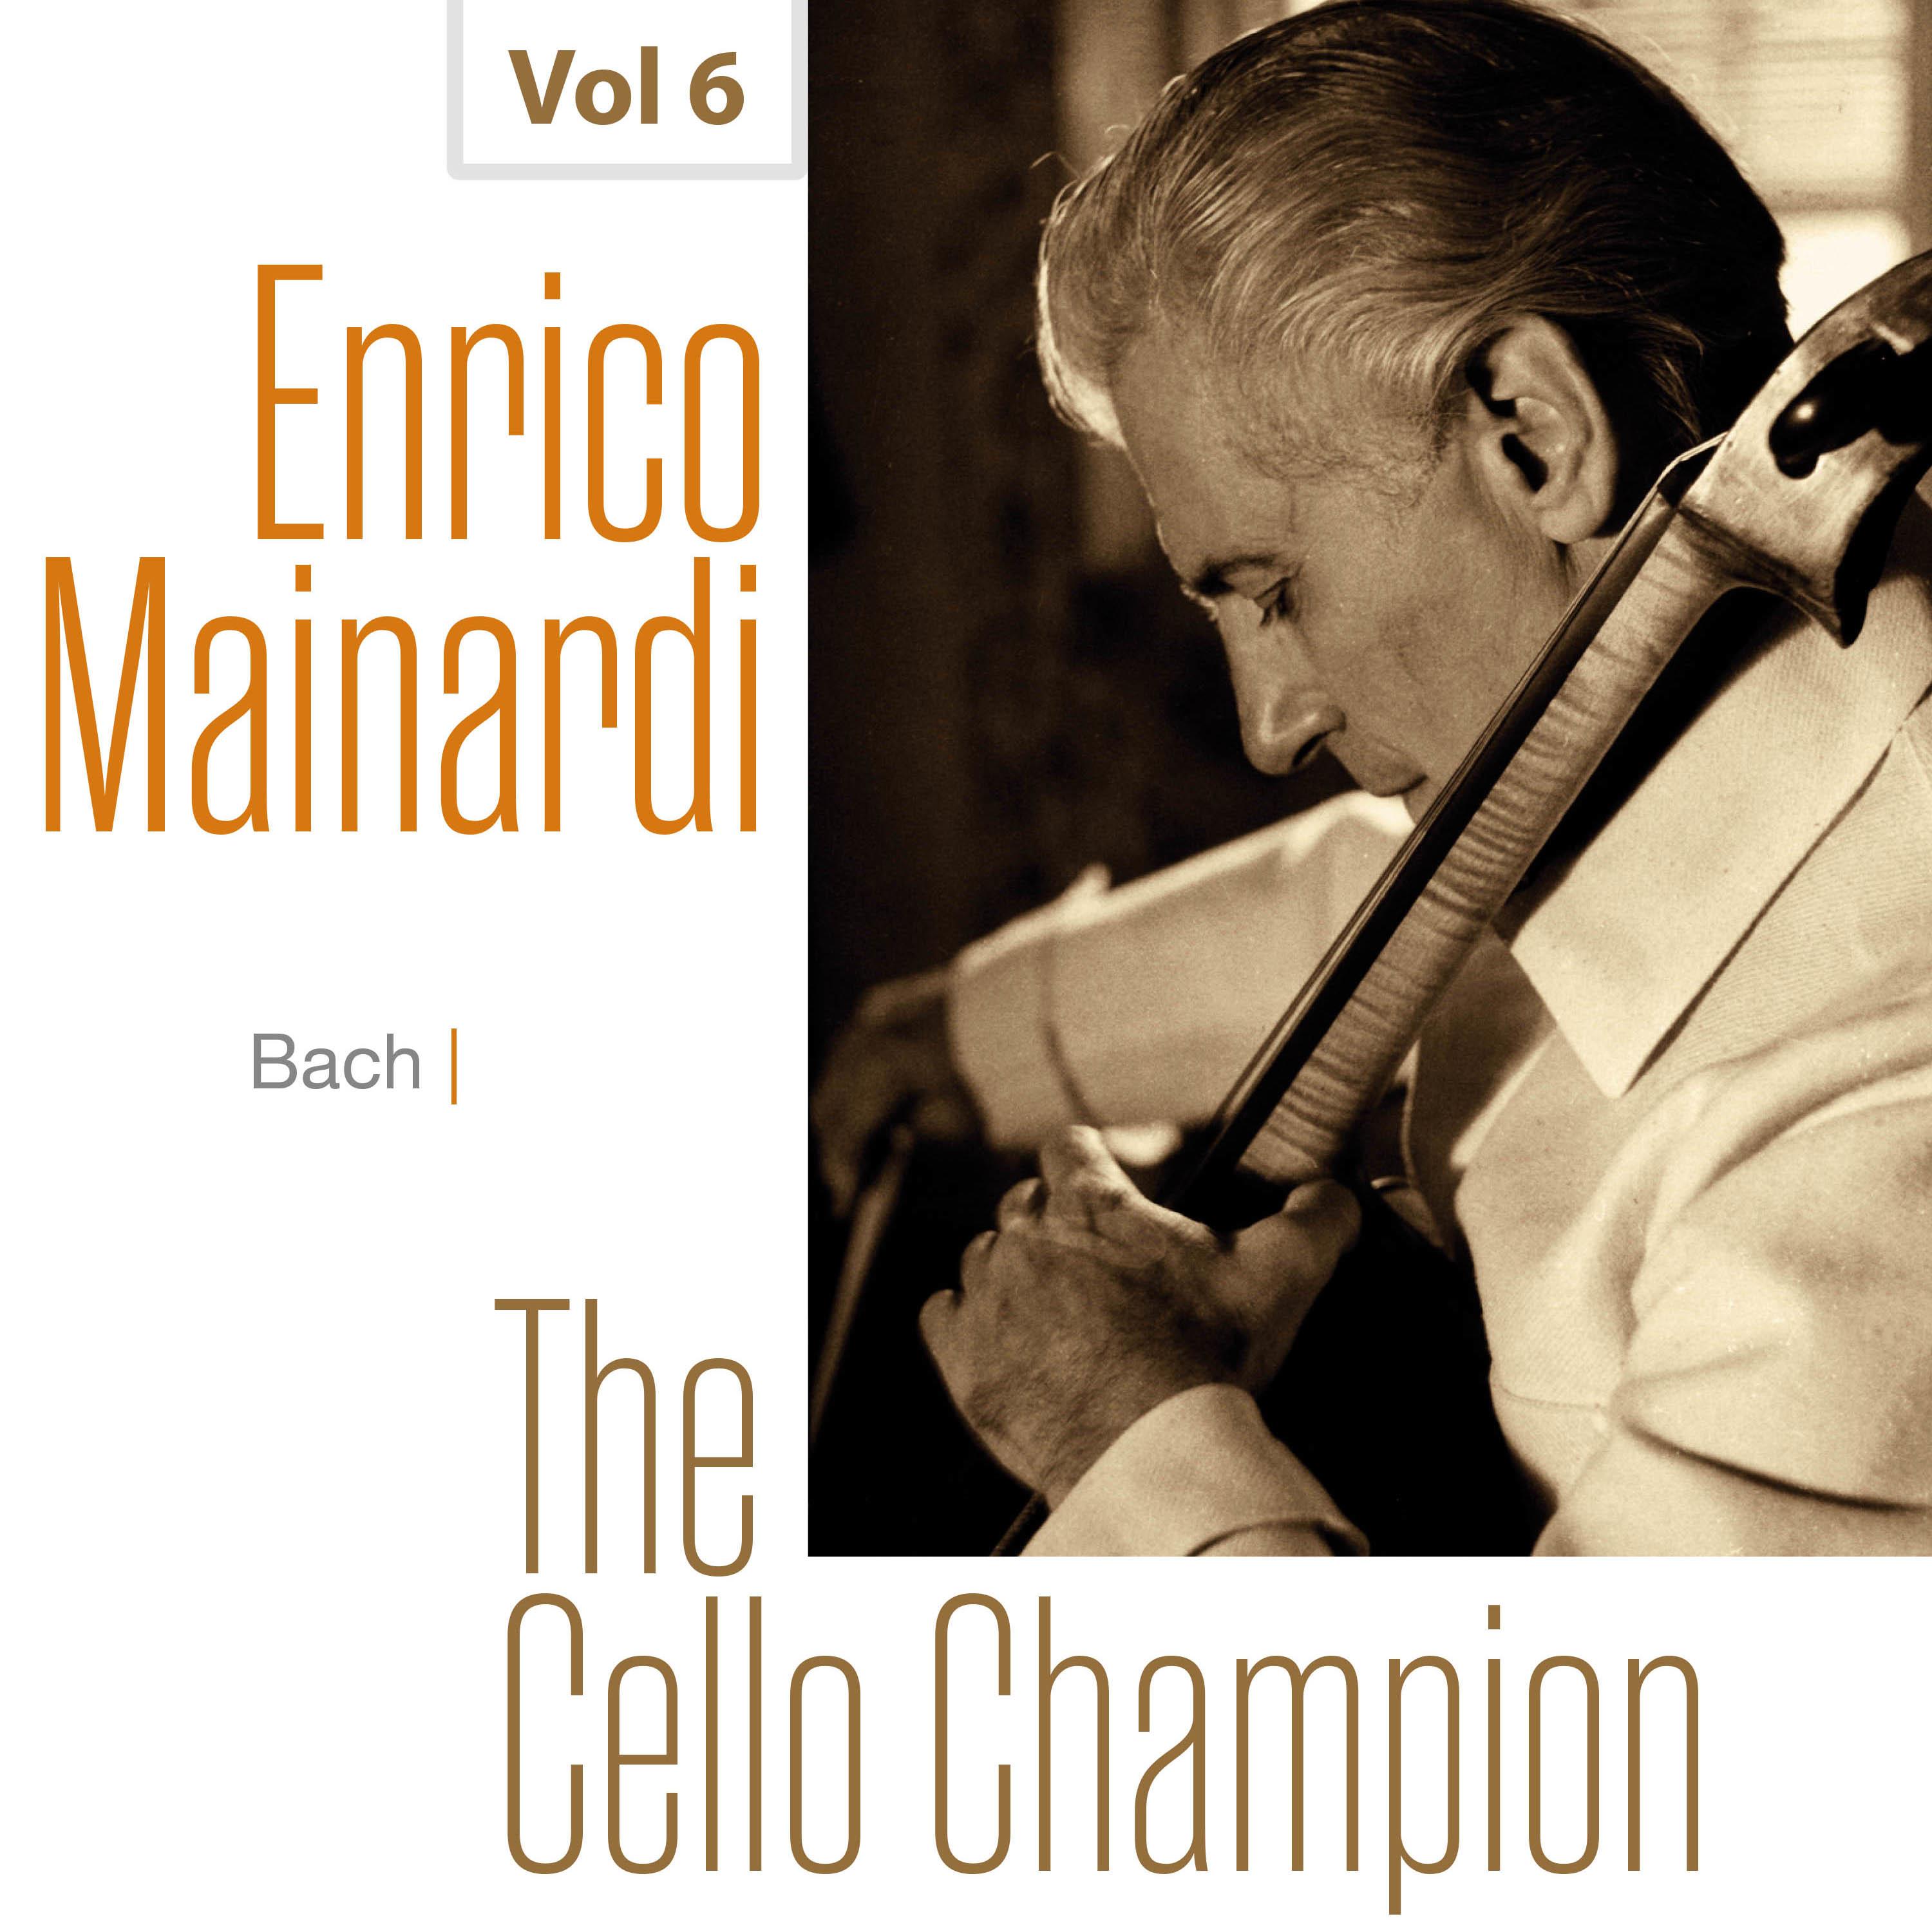 Enrico Mainardi - The Cello Champion, Vol. 6